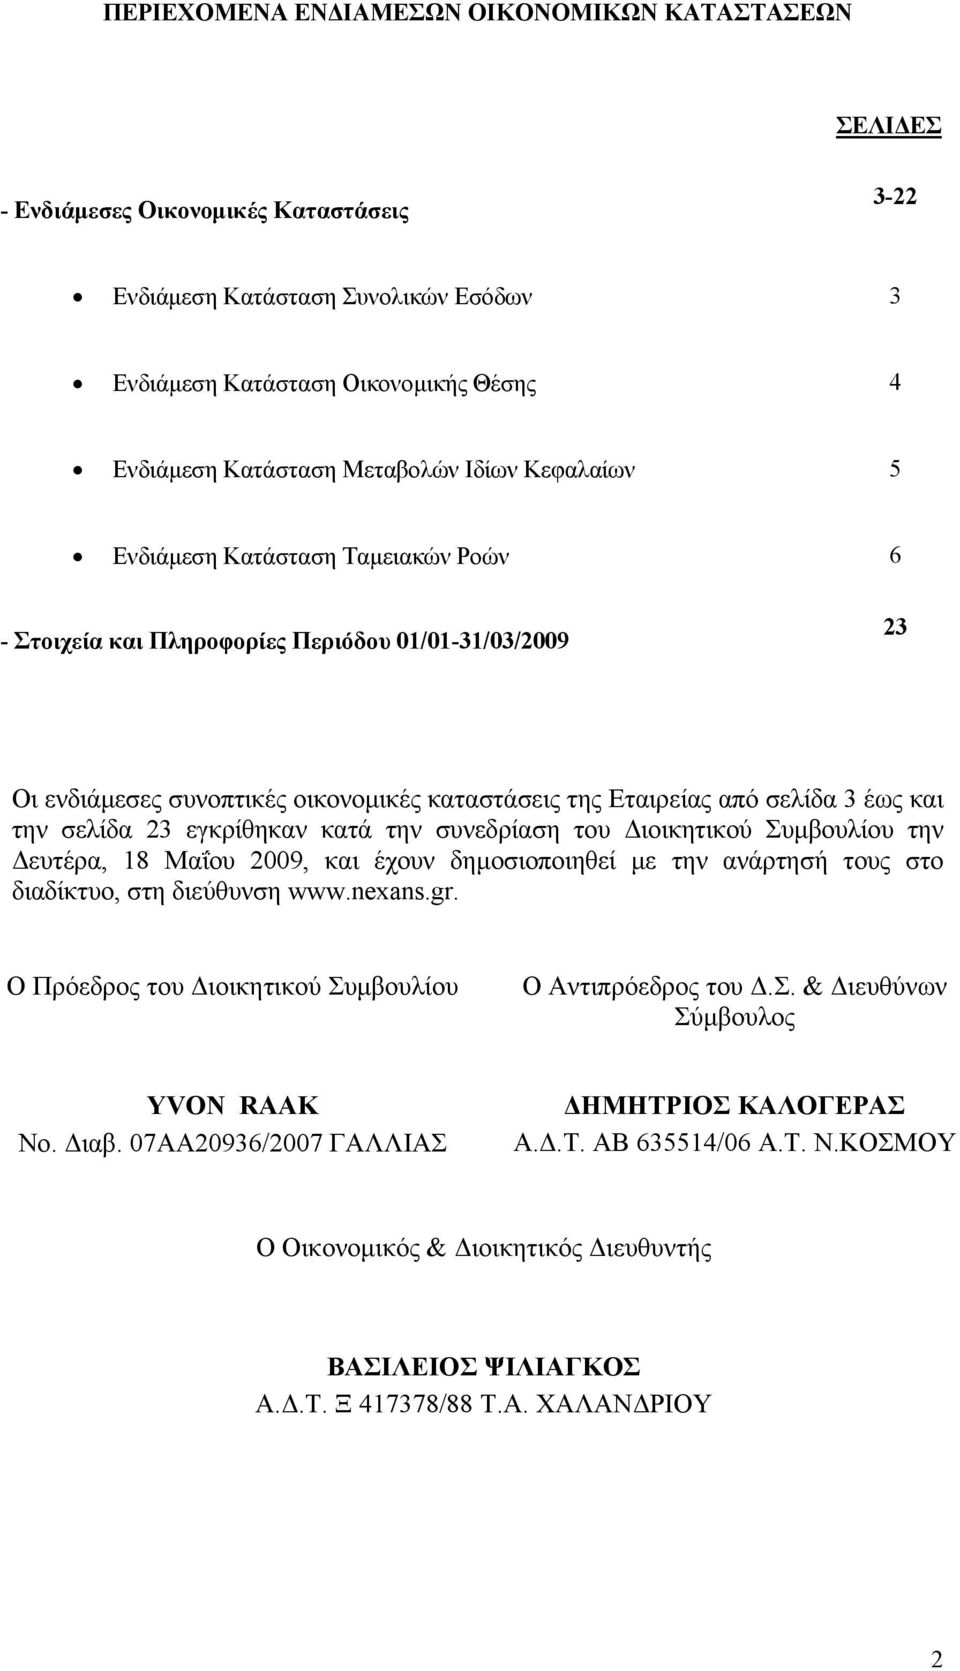 έως και την σελίδα 23 εγκρίθηκαν κατά την συνεδρίαση του ιοικητικού Συµβουλίου την ευτέρα, 18 Μαΐου 2009, και έχουν δηµοσιοποιηθεί µε την ανάρτησή τους στο διαδίκτυο, στη διεύθυνση www.nexans.gr.